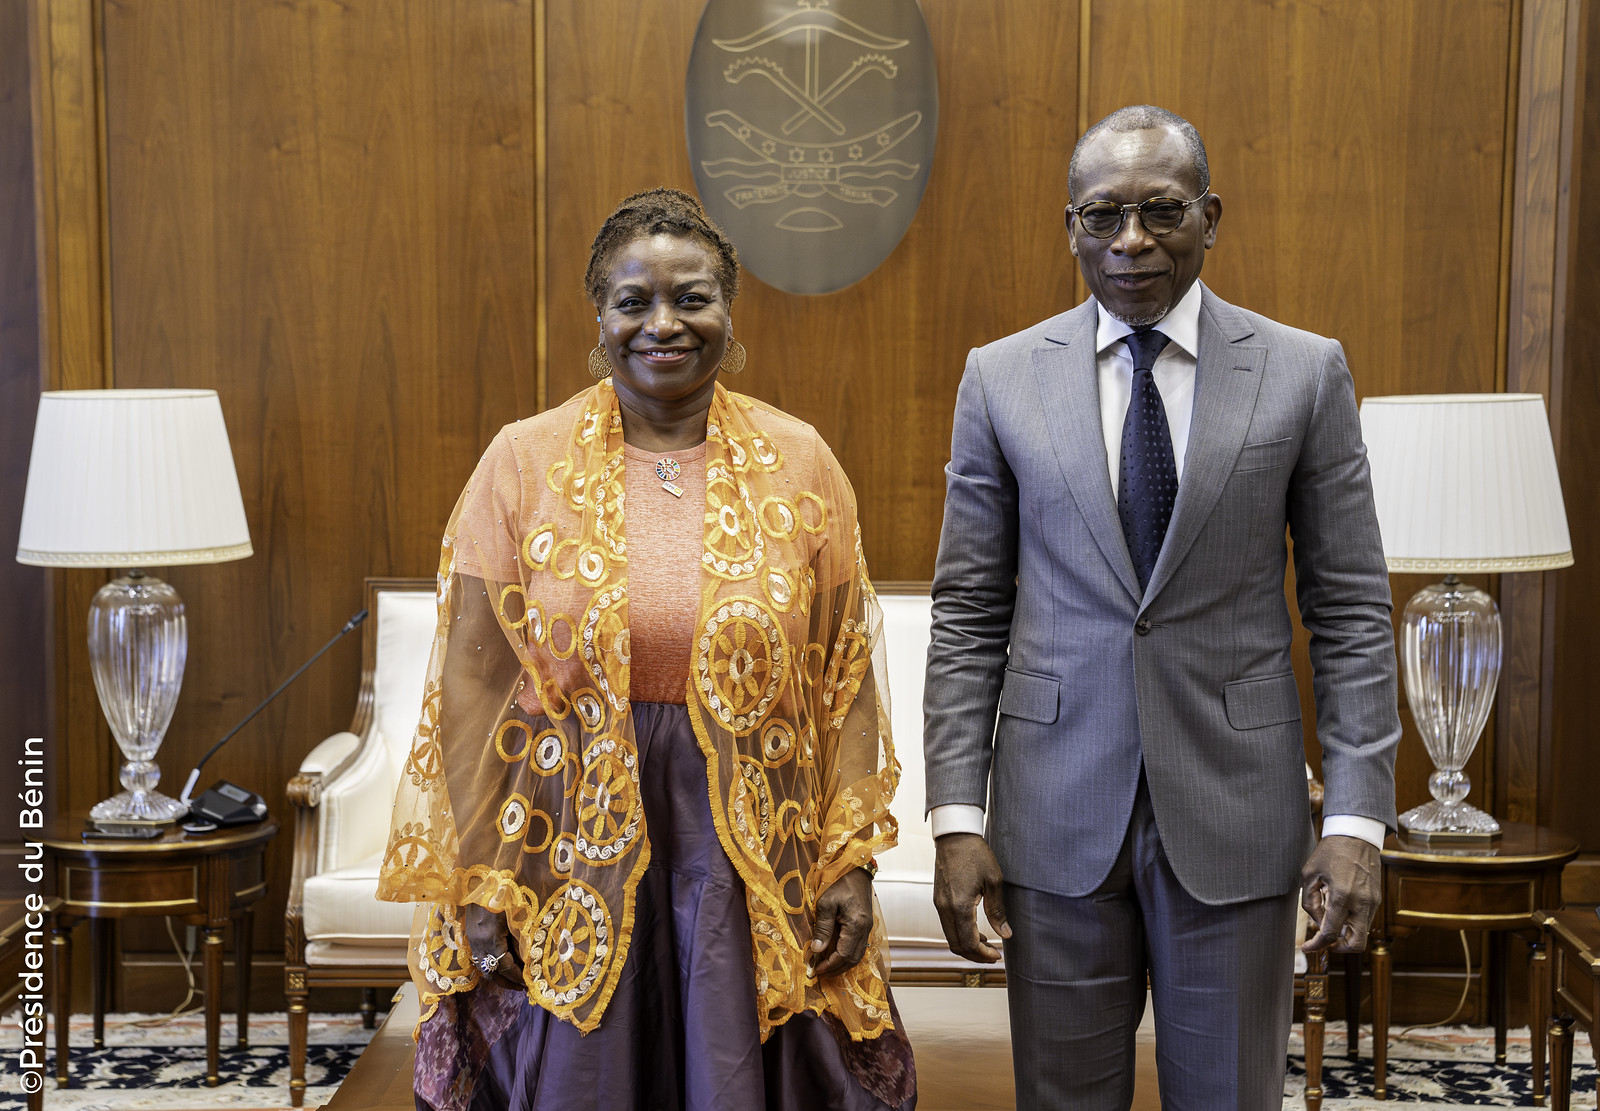 le Président Patrice TALON a accueilli avec déférence Madame Natalia KANEM, éminente Directrice Exécutive de l’UNFPA